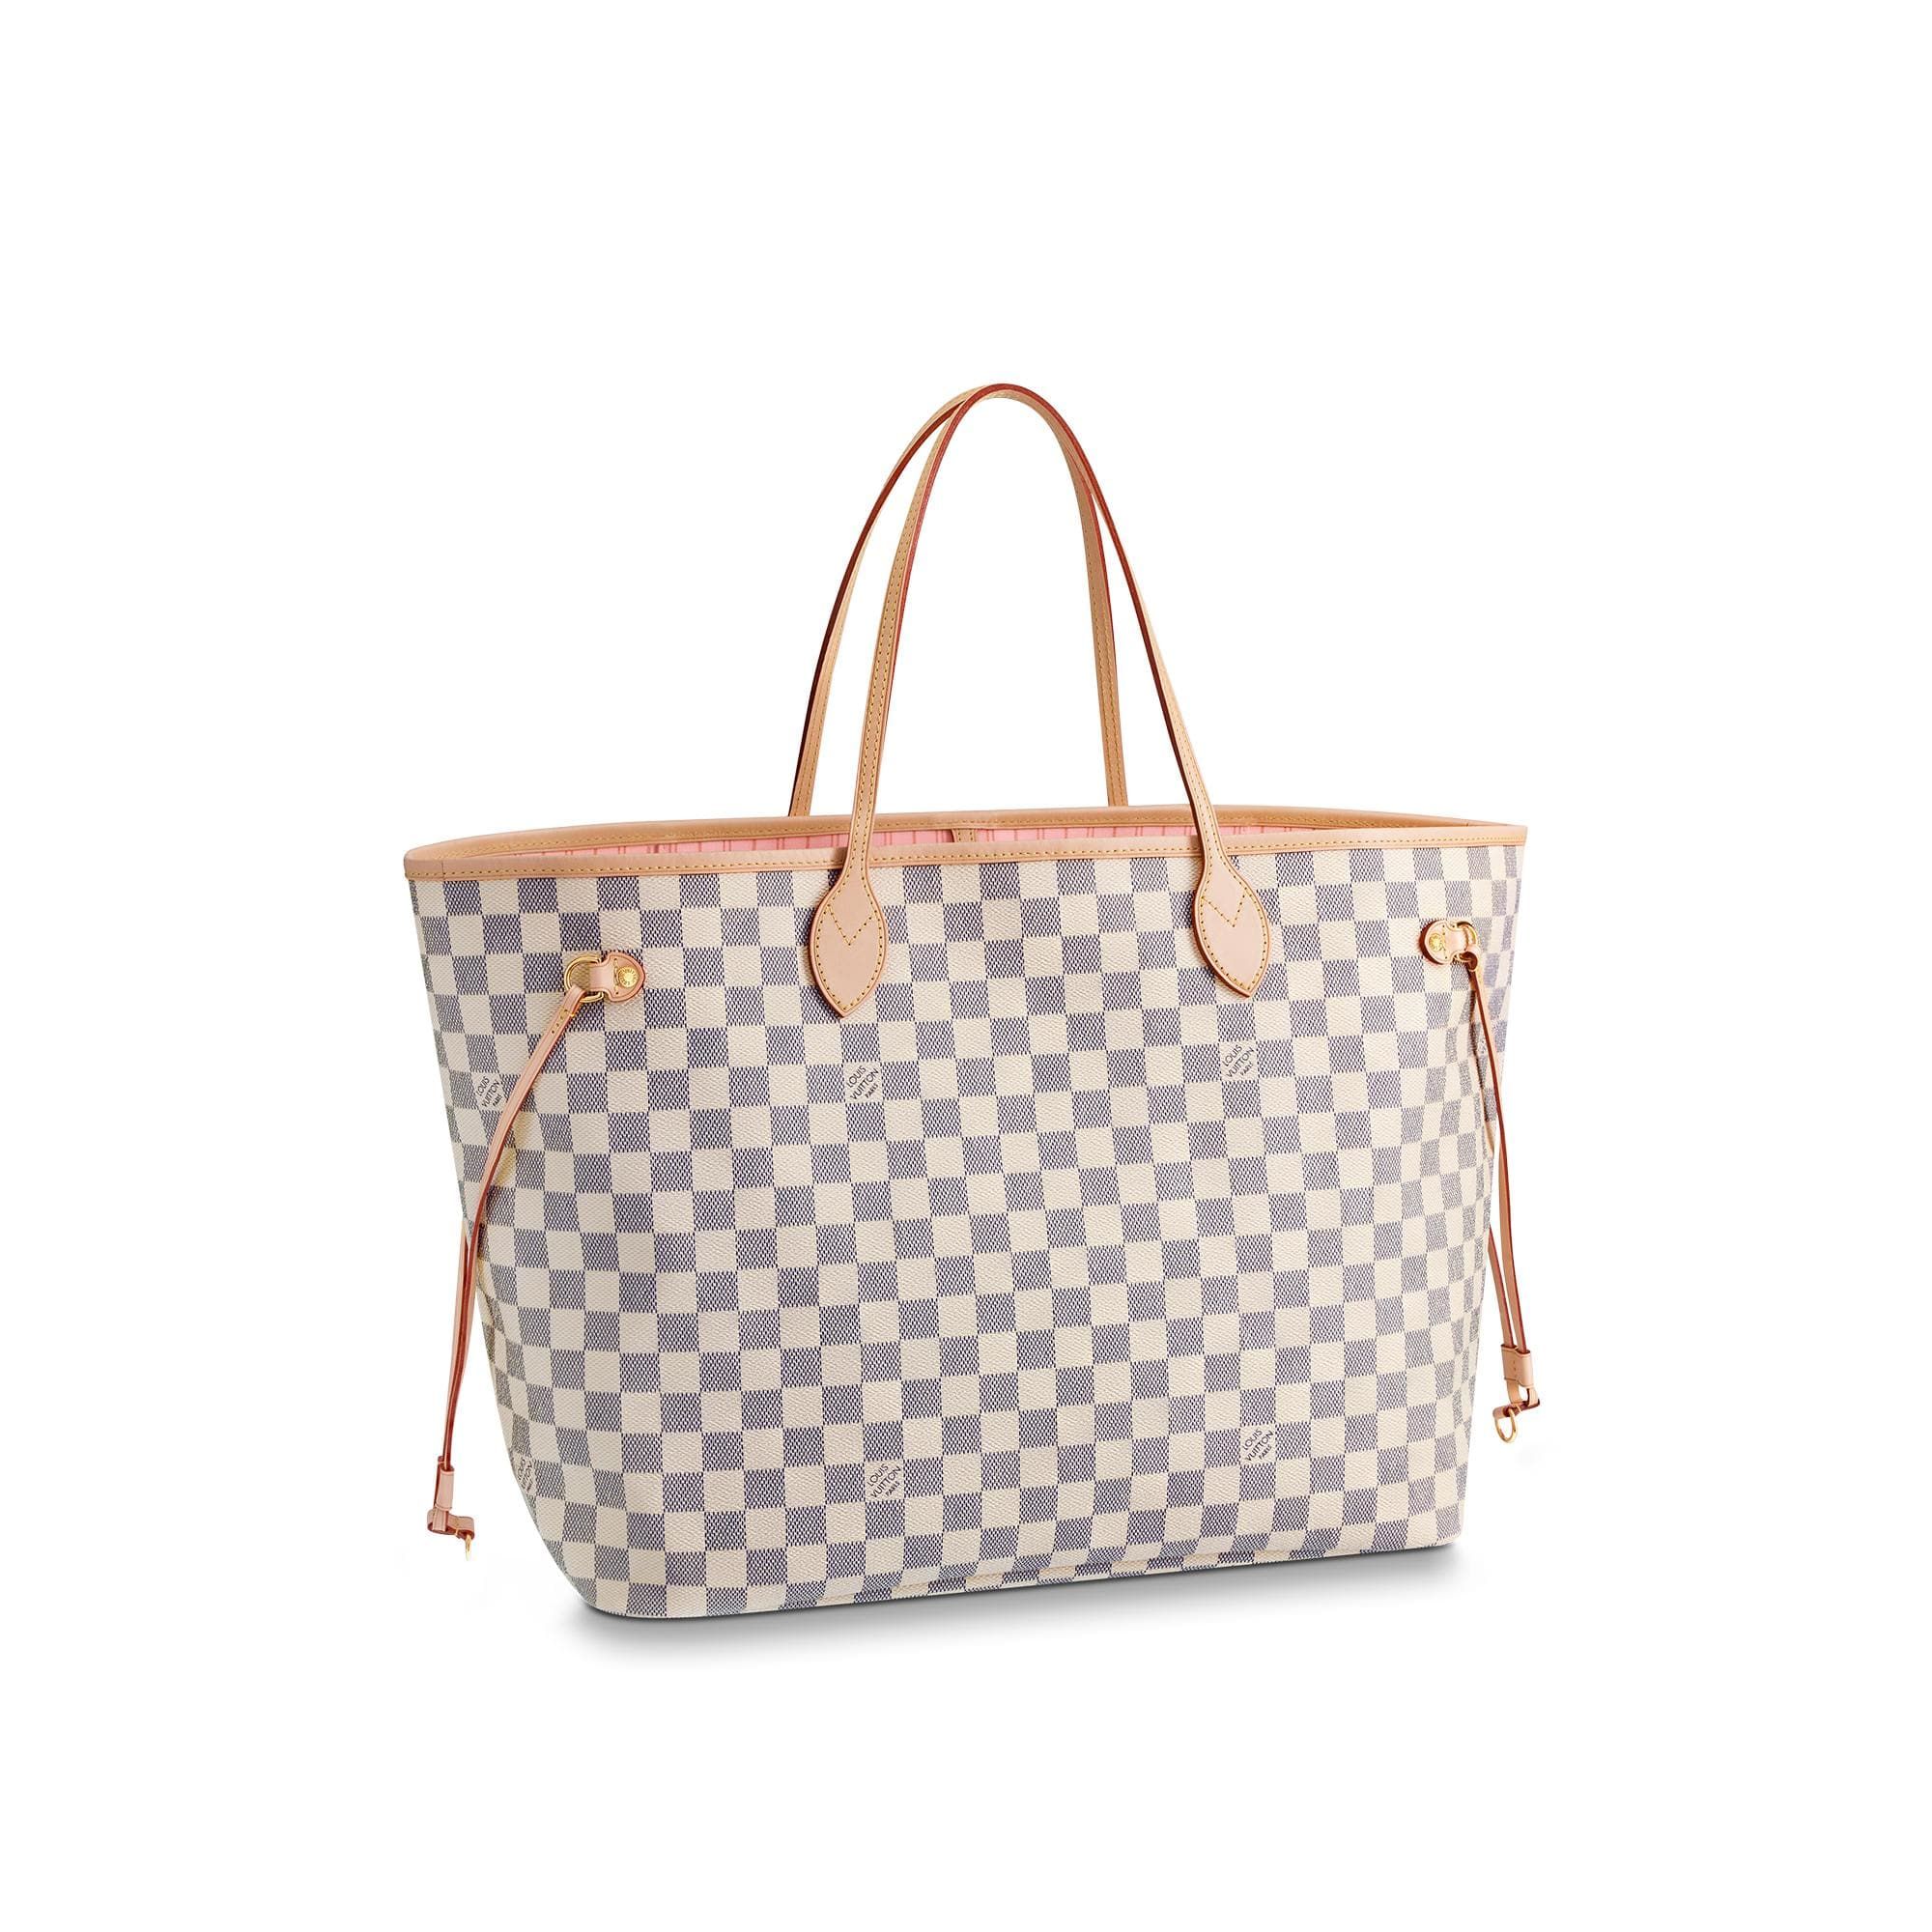 高仿LV购物袋 LV NEVERFULL 棋盘白格大号手袋购物袋 N41604 粉色内里 高仿LV购物袋 N41604